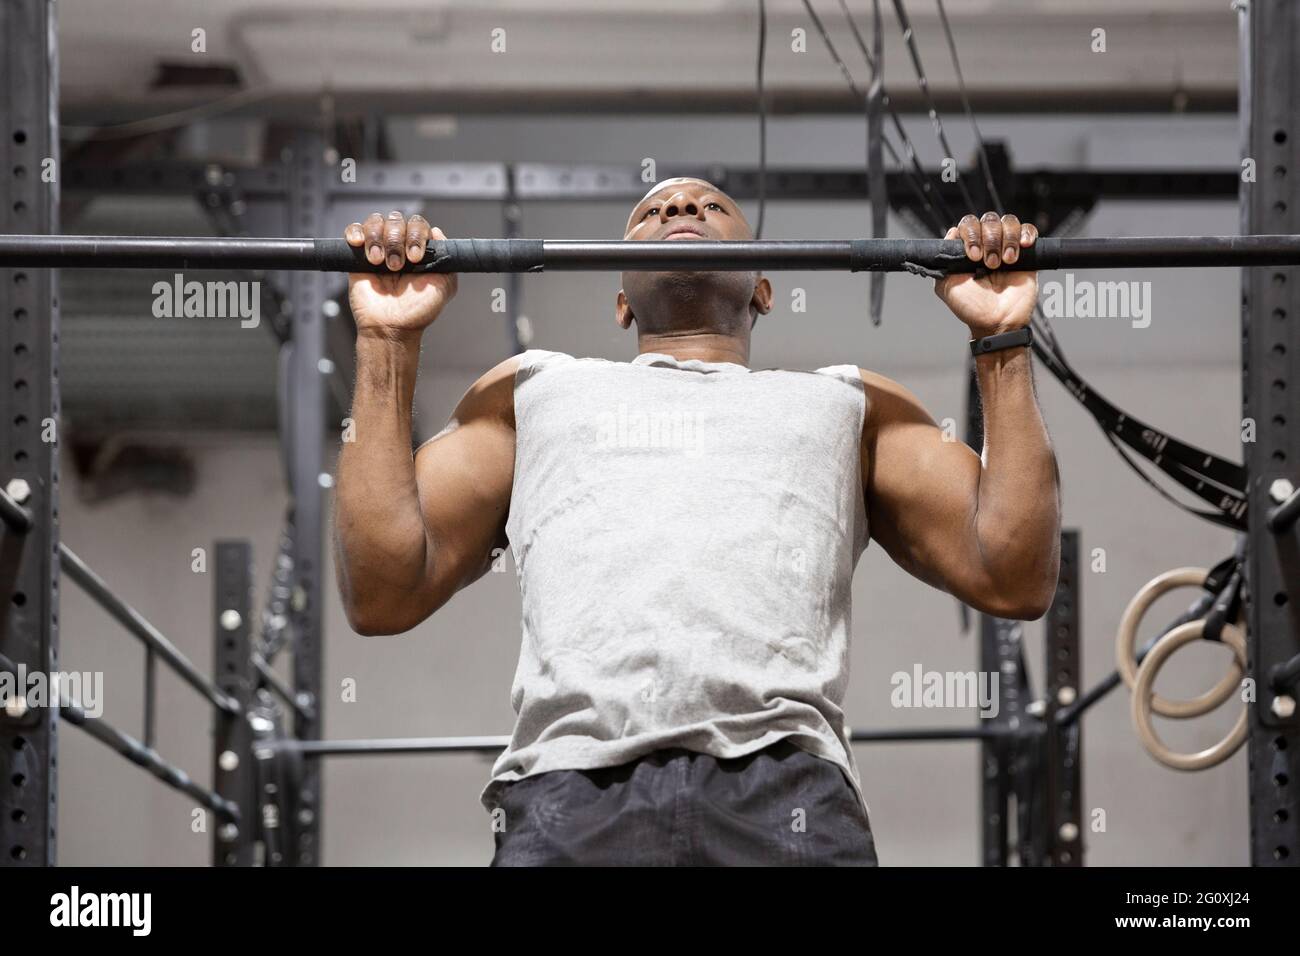 Sportif afro-américain faisant de l'exercice physique sur la barre fixe. Entraînement physique dans la salle de gym. Banque D'Images